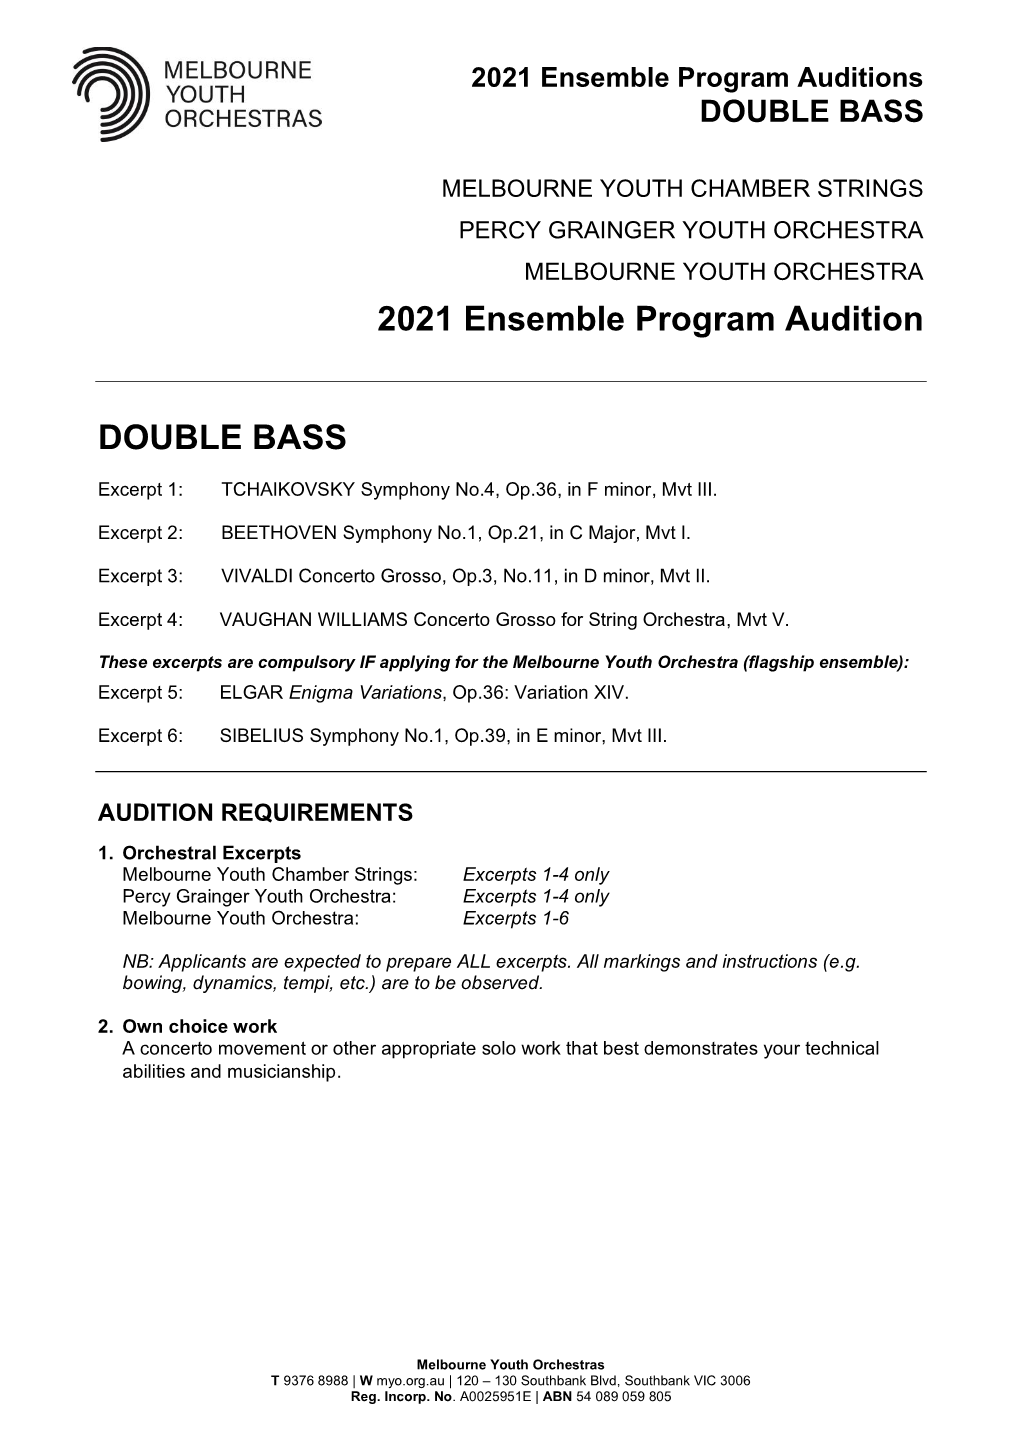 2021 Ensemble Program Audition DOUBLE BASS